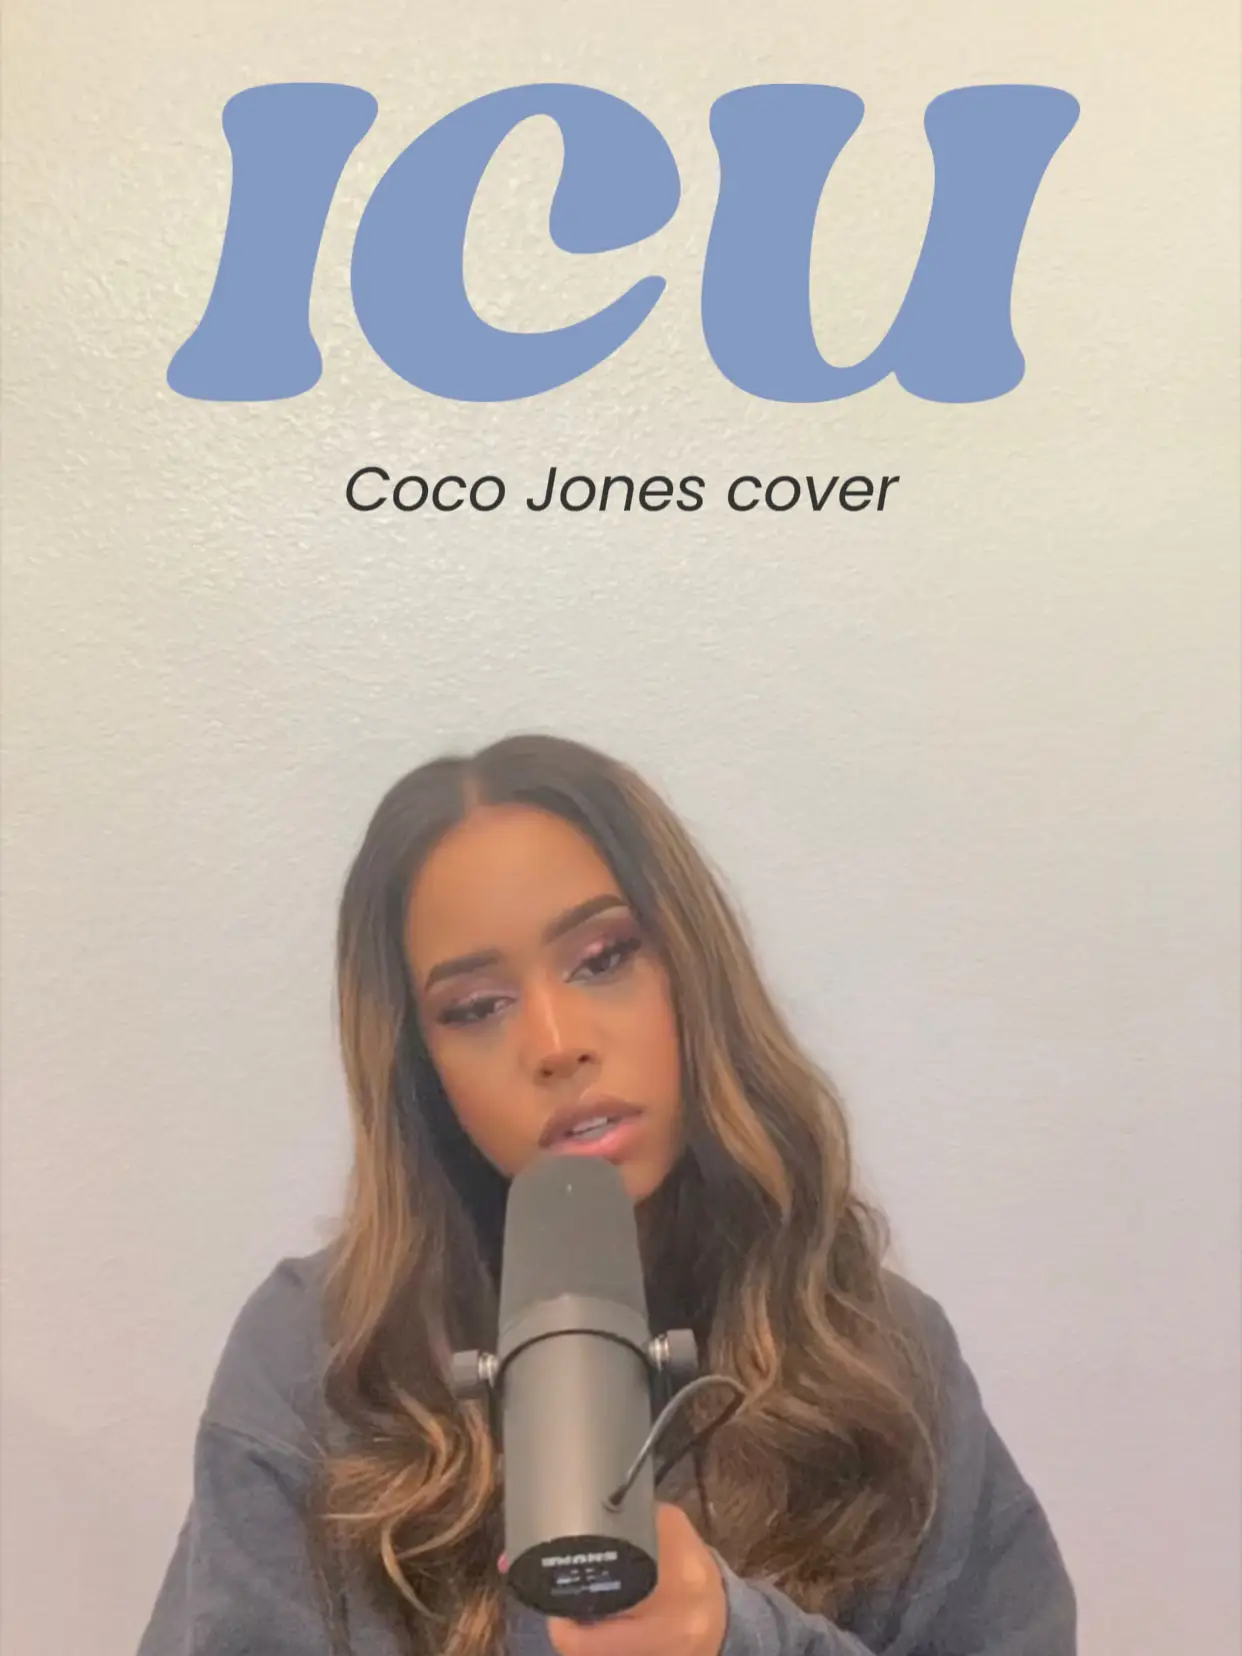 ICU - Coco Jones Cover's images